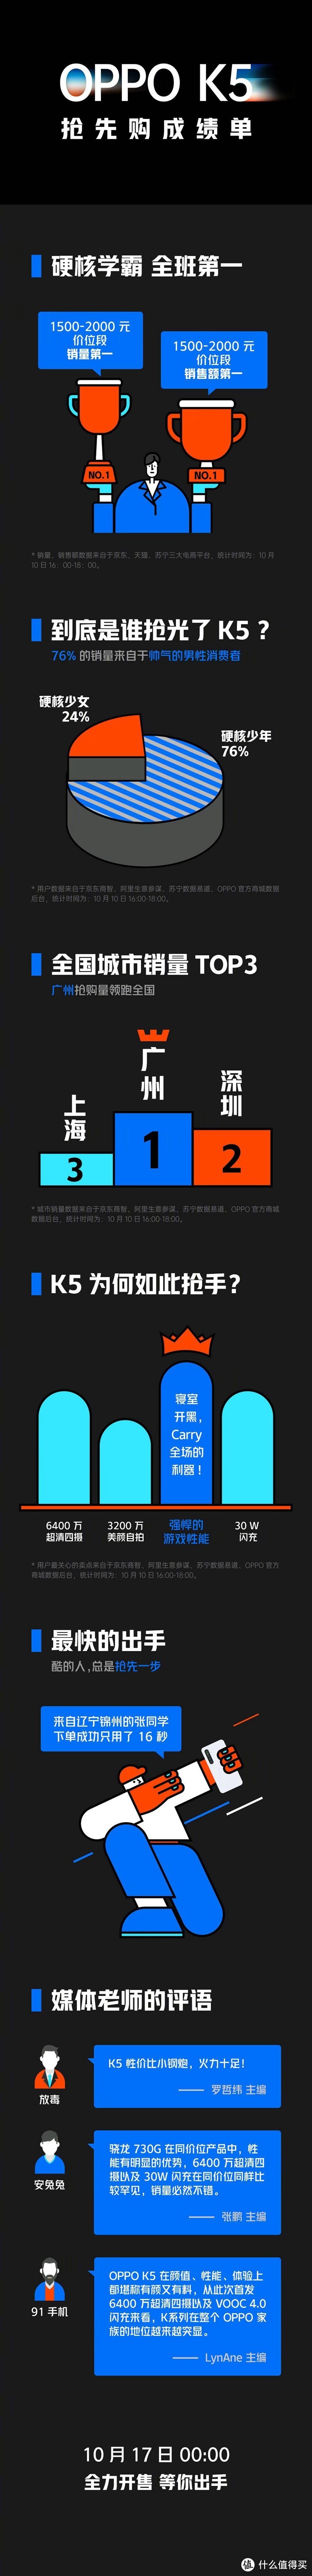 千元机中的性价比王者 OPPO K5首销即夺得双冠军头衔